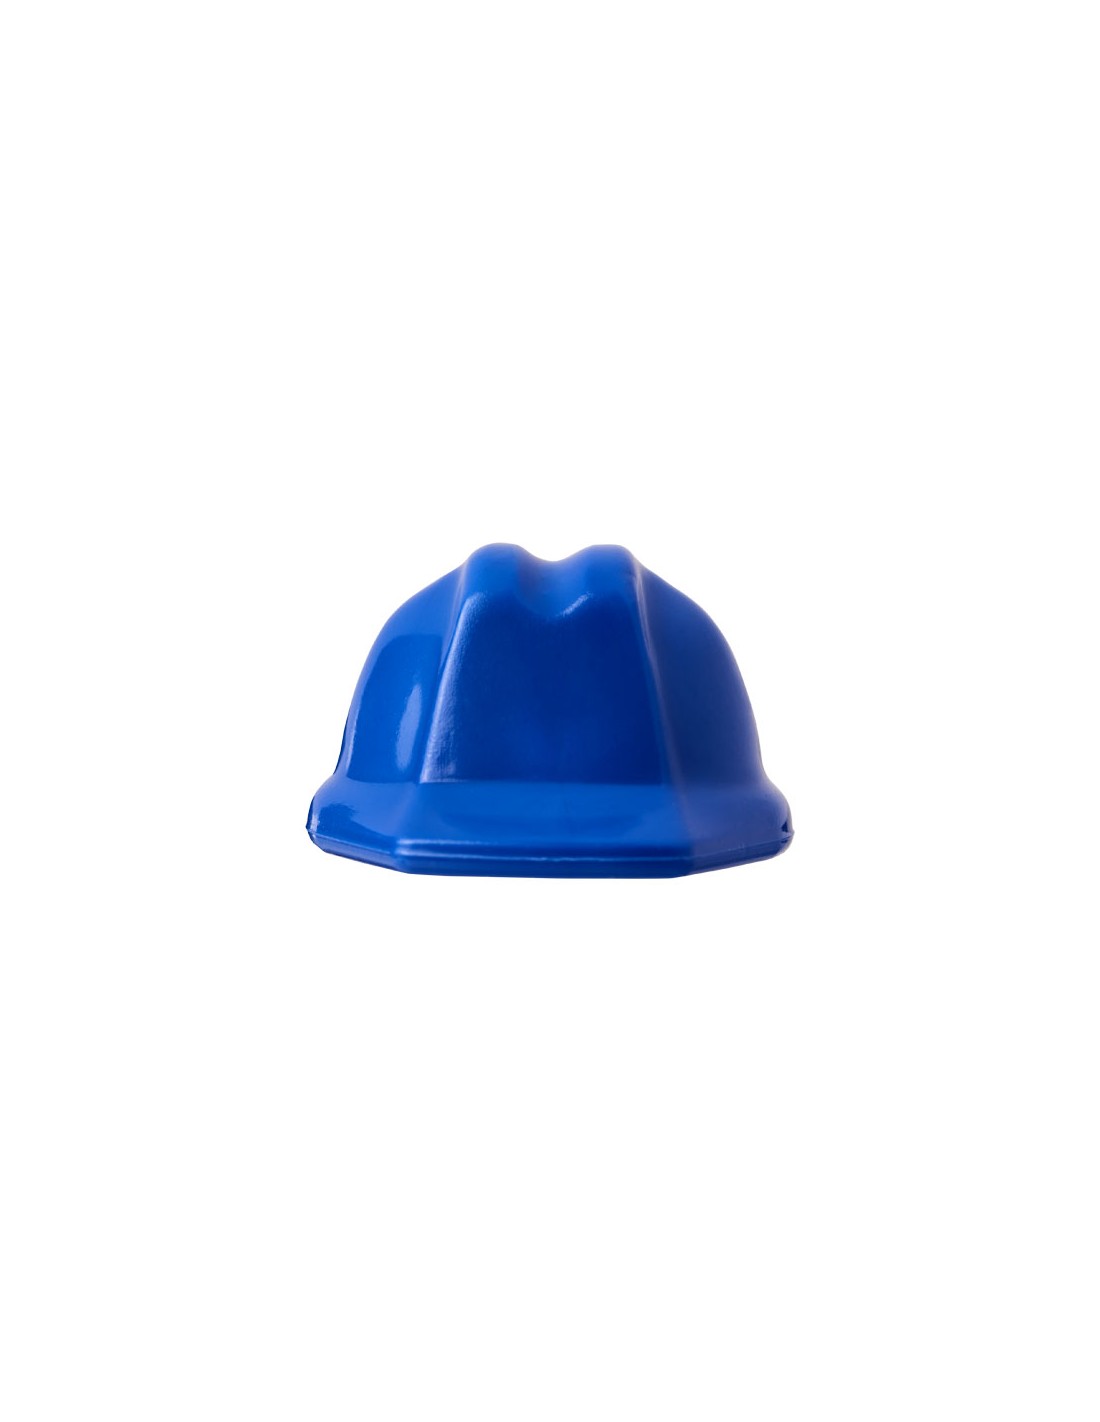 Porte-clés en forme de casque de chantier Kolt - Bleu imprimé et